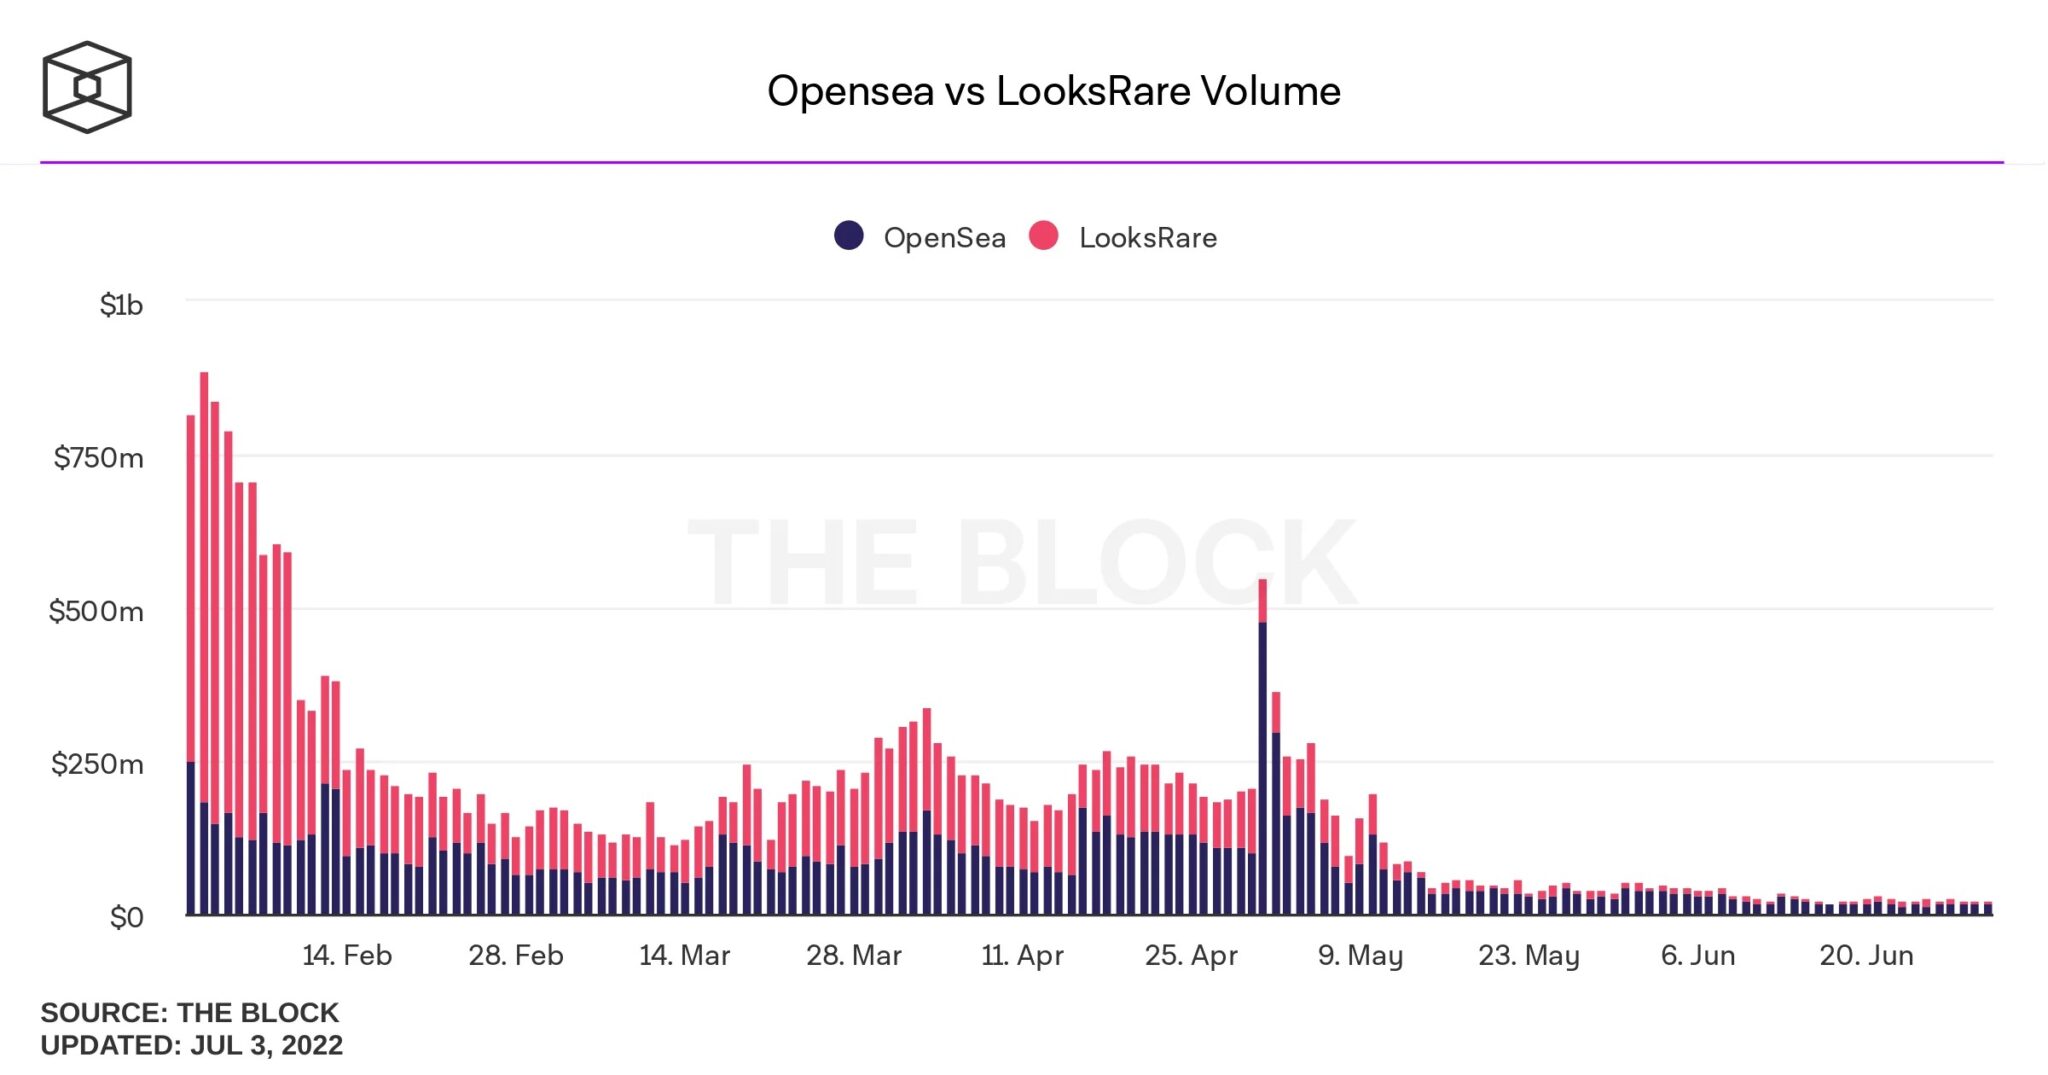 Figura 2: Comparación de volúmenes entre OpenSea y LooksRare